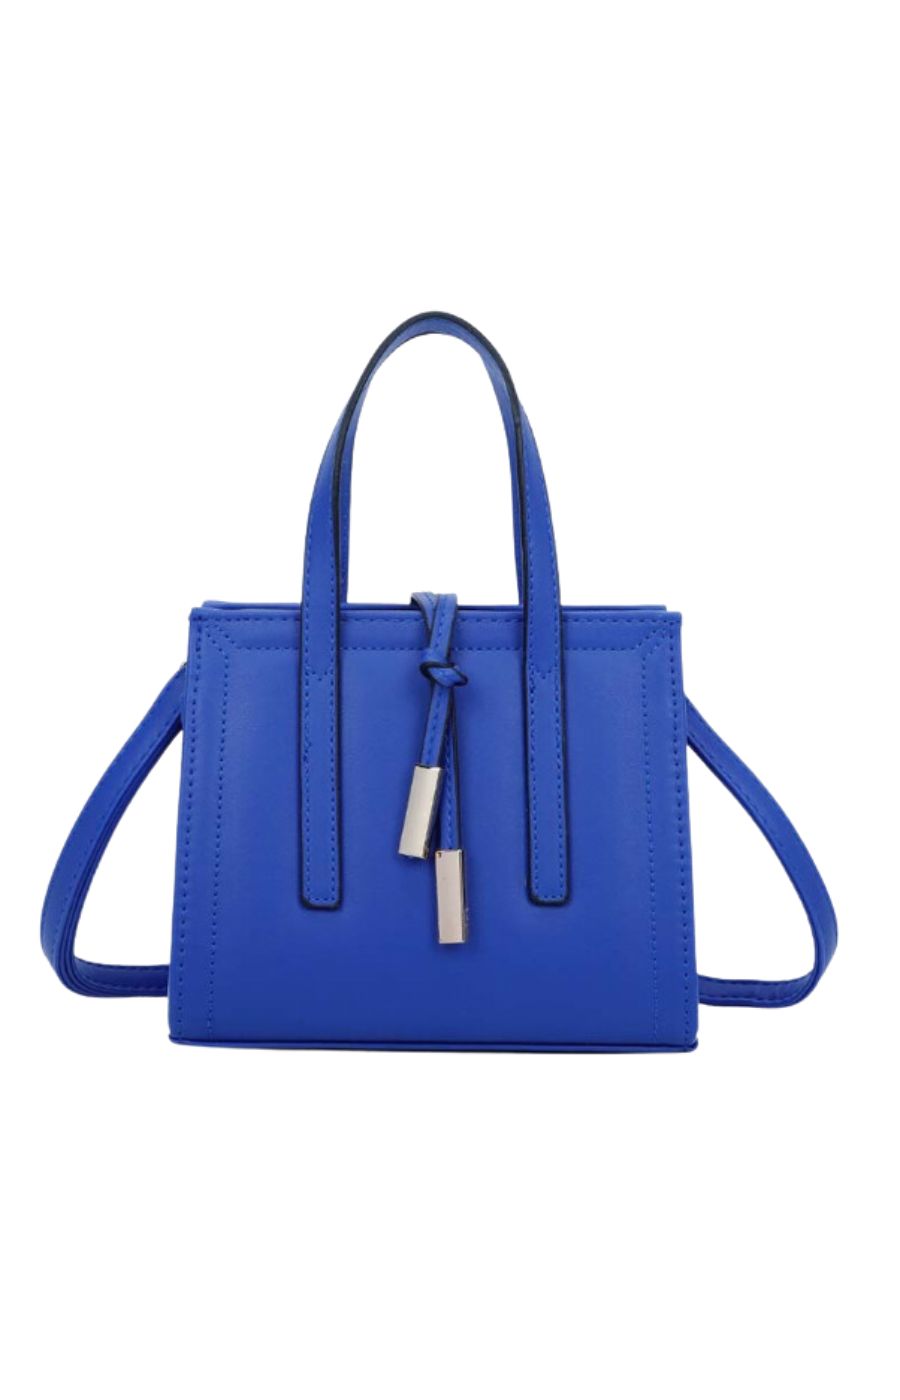 Ruby Bag in Blue